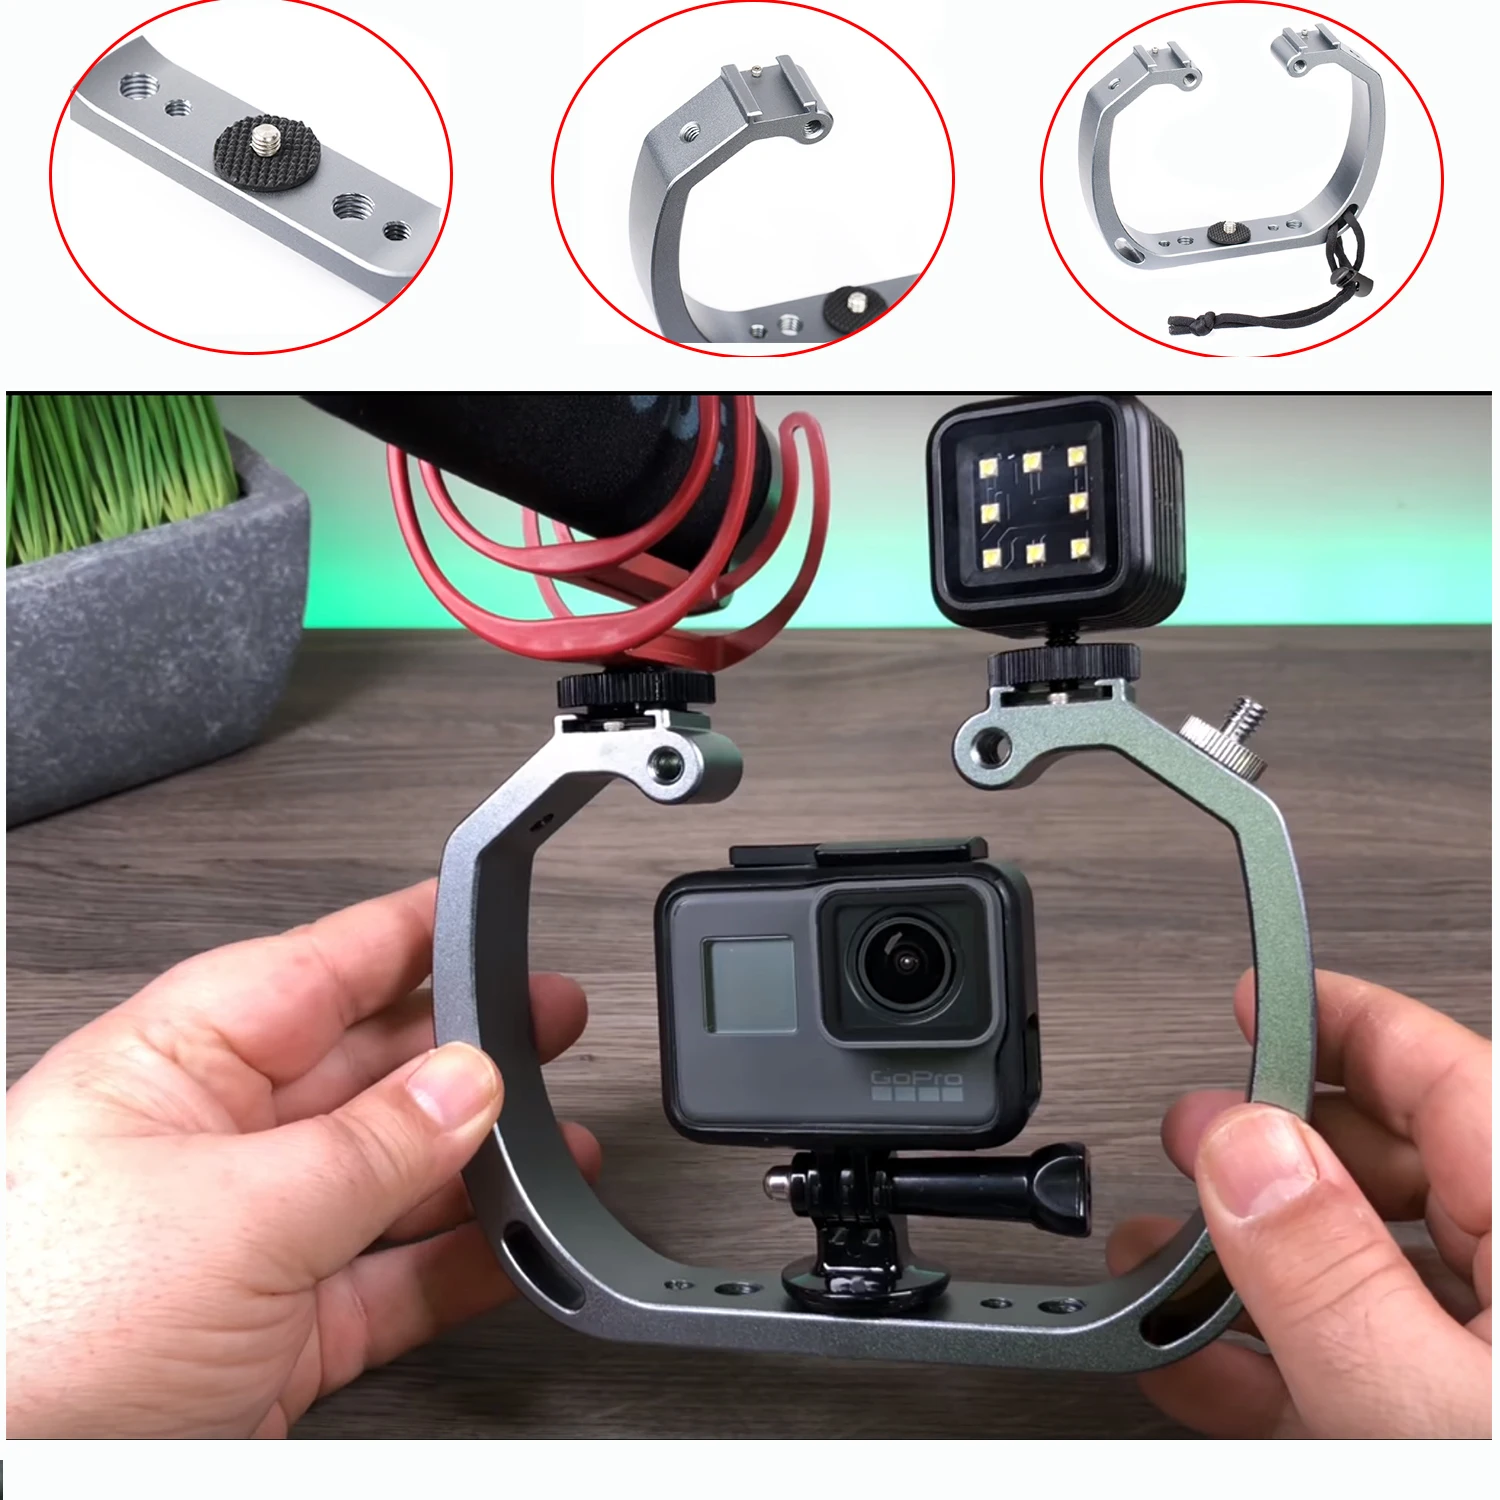 Sevenoak SK-GHA6 Handheld Aluminum Video Cage Rig Stabilizer Frame Bracket Micro Film Making System for GoPro Action Cameras enlarge